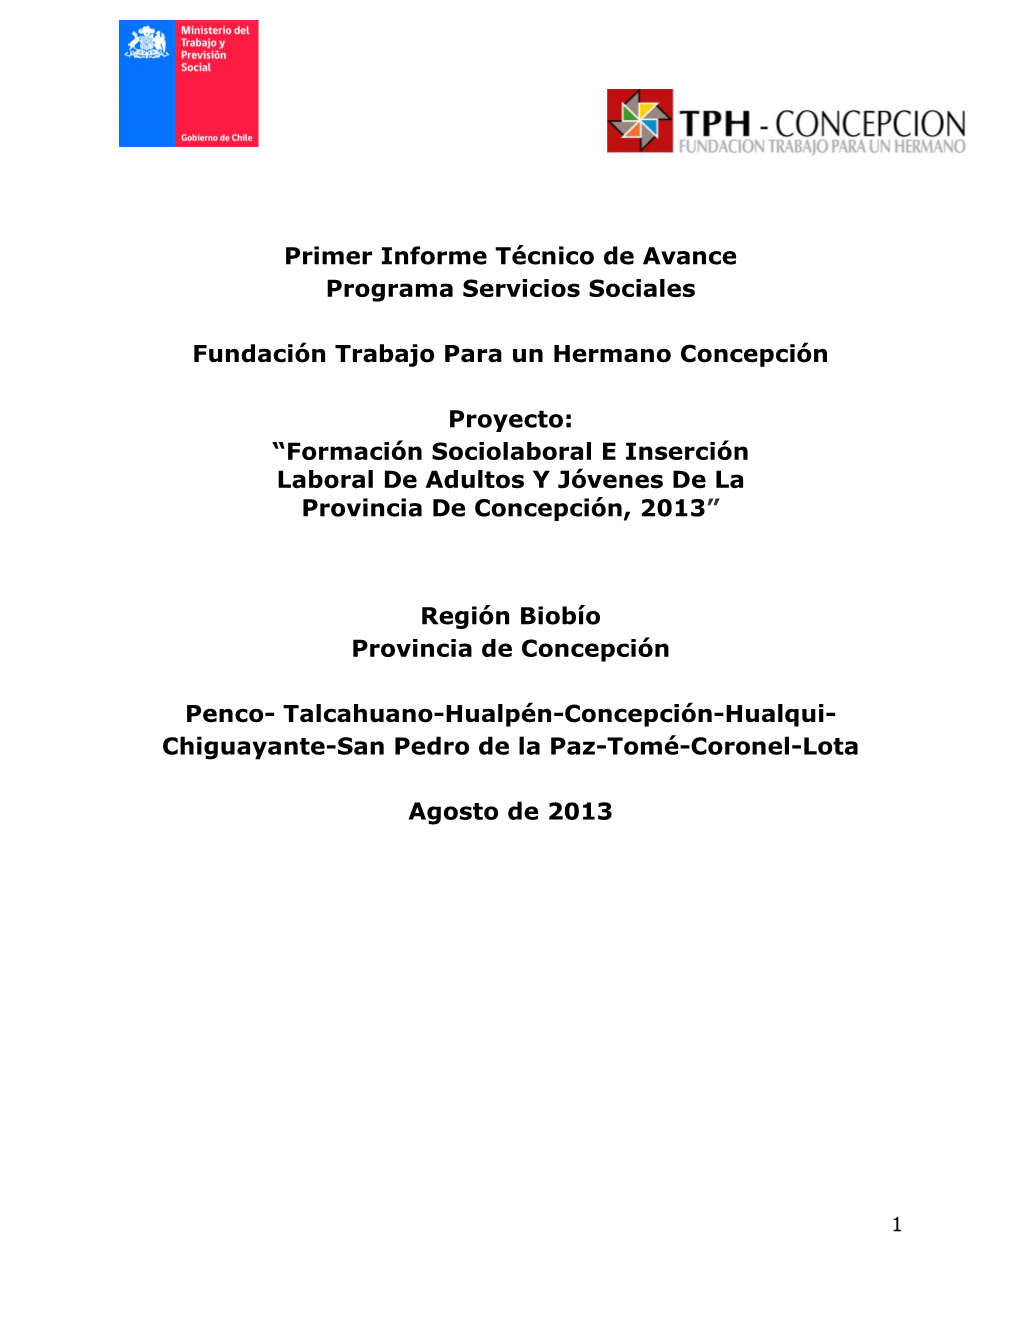 Primer Informe Técnico De Avance Programa Servicios Sociales Fundación Trabajo Para Un Hermano Concepción Proyecto: “Form